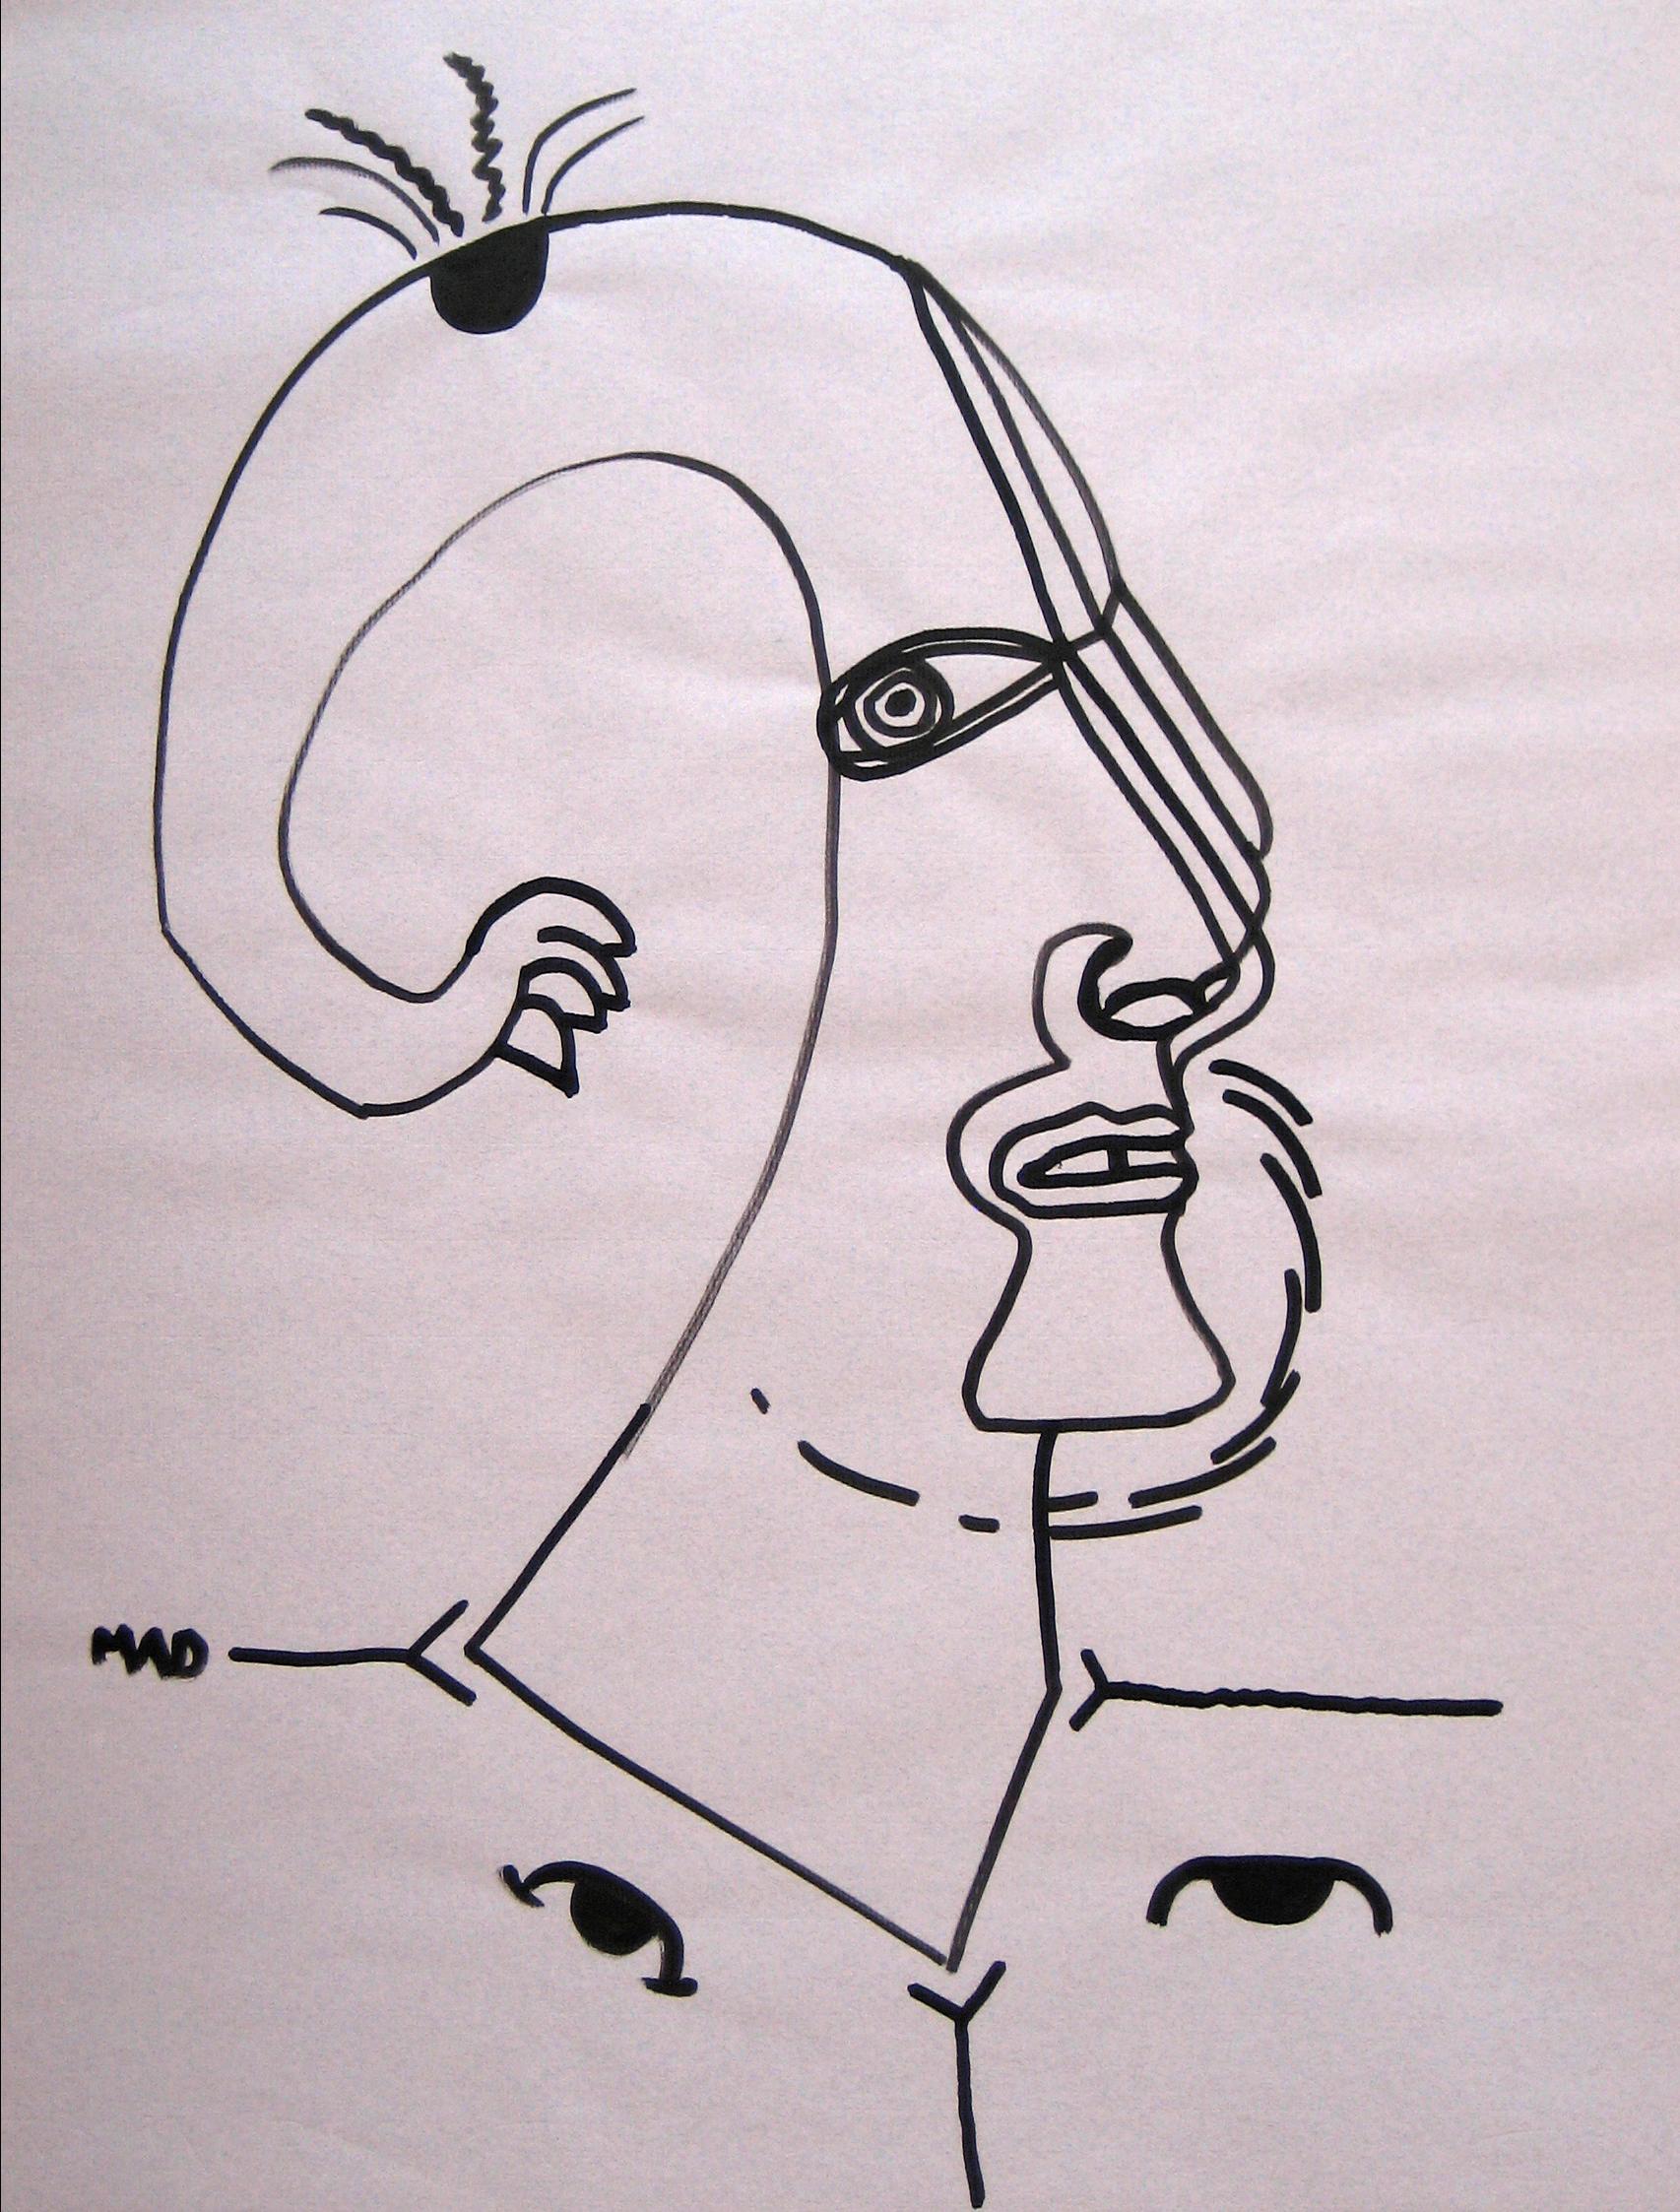 Michael di Cosola Portrait - 20th Century Continuous Line Drawing in Graphite